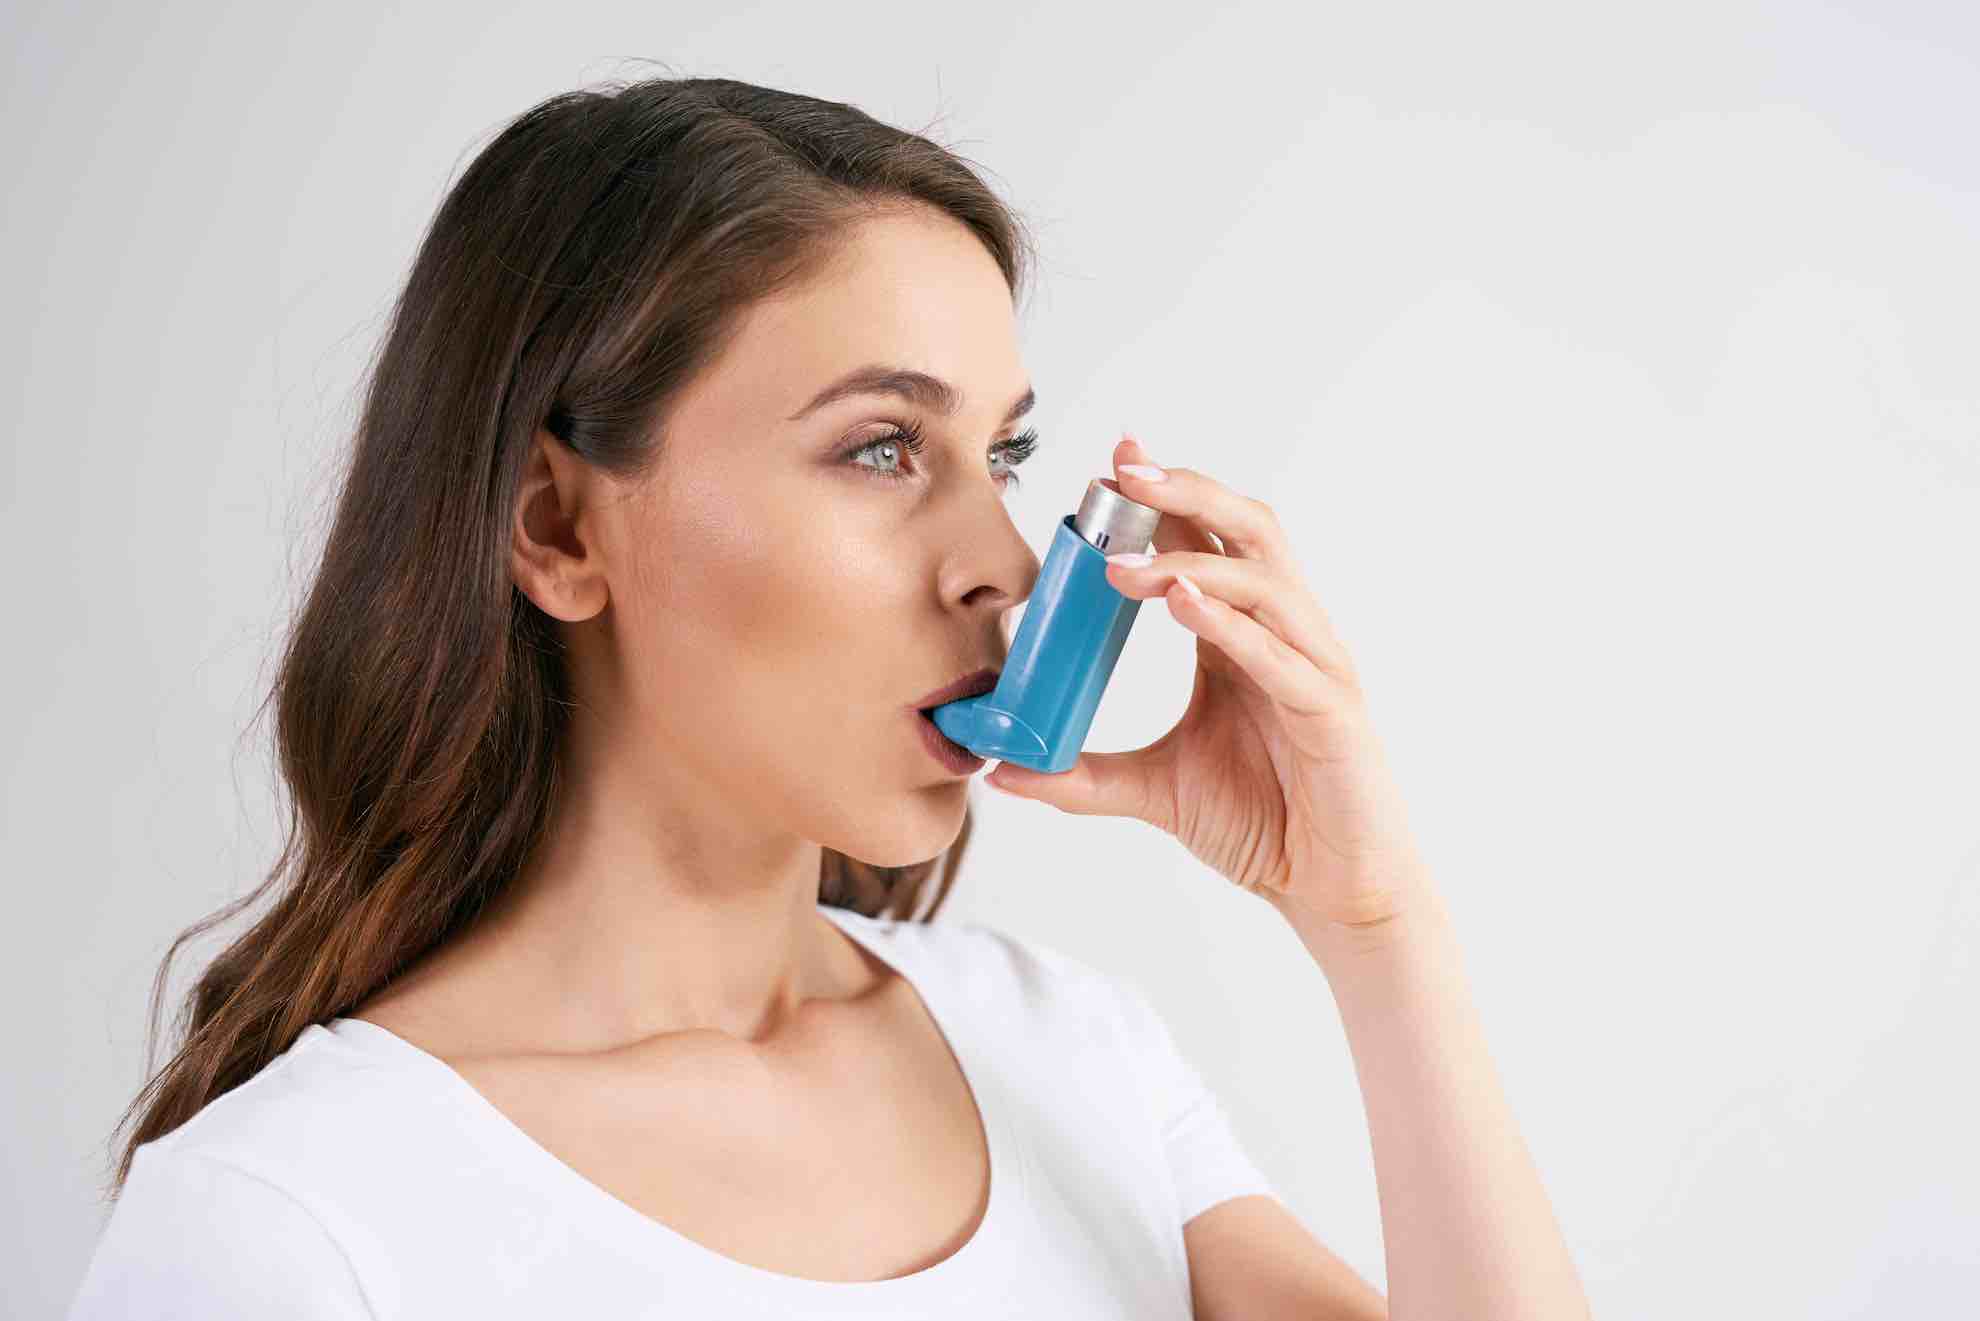 Bei Asthma richtig inhalieren